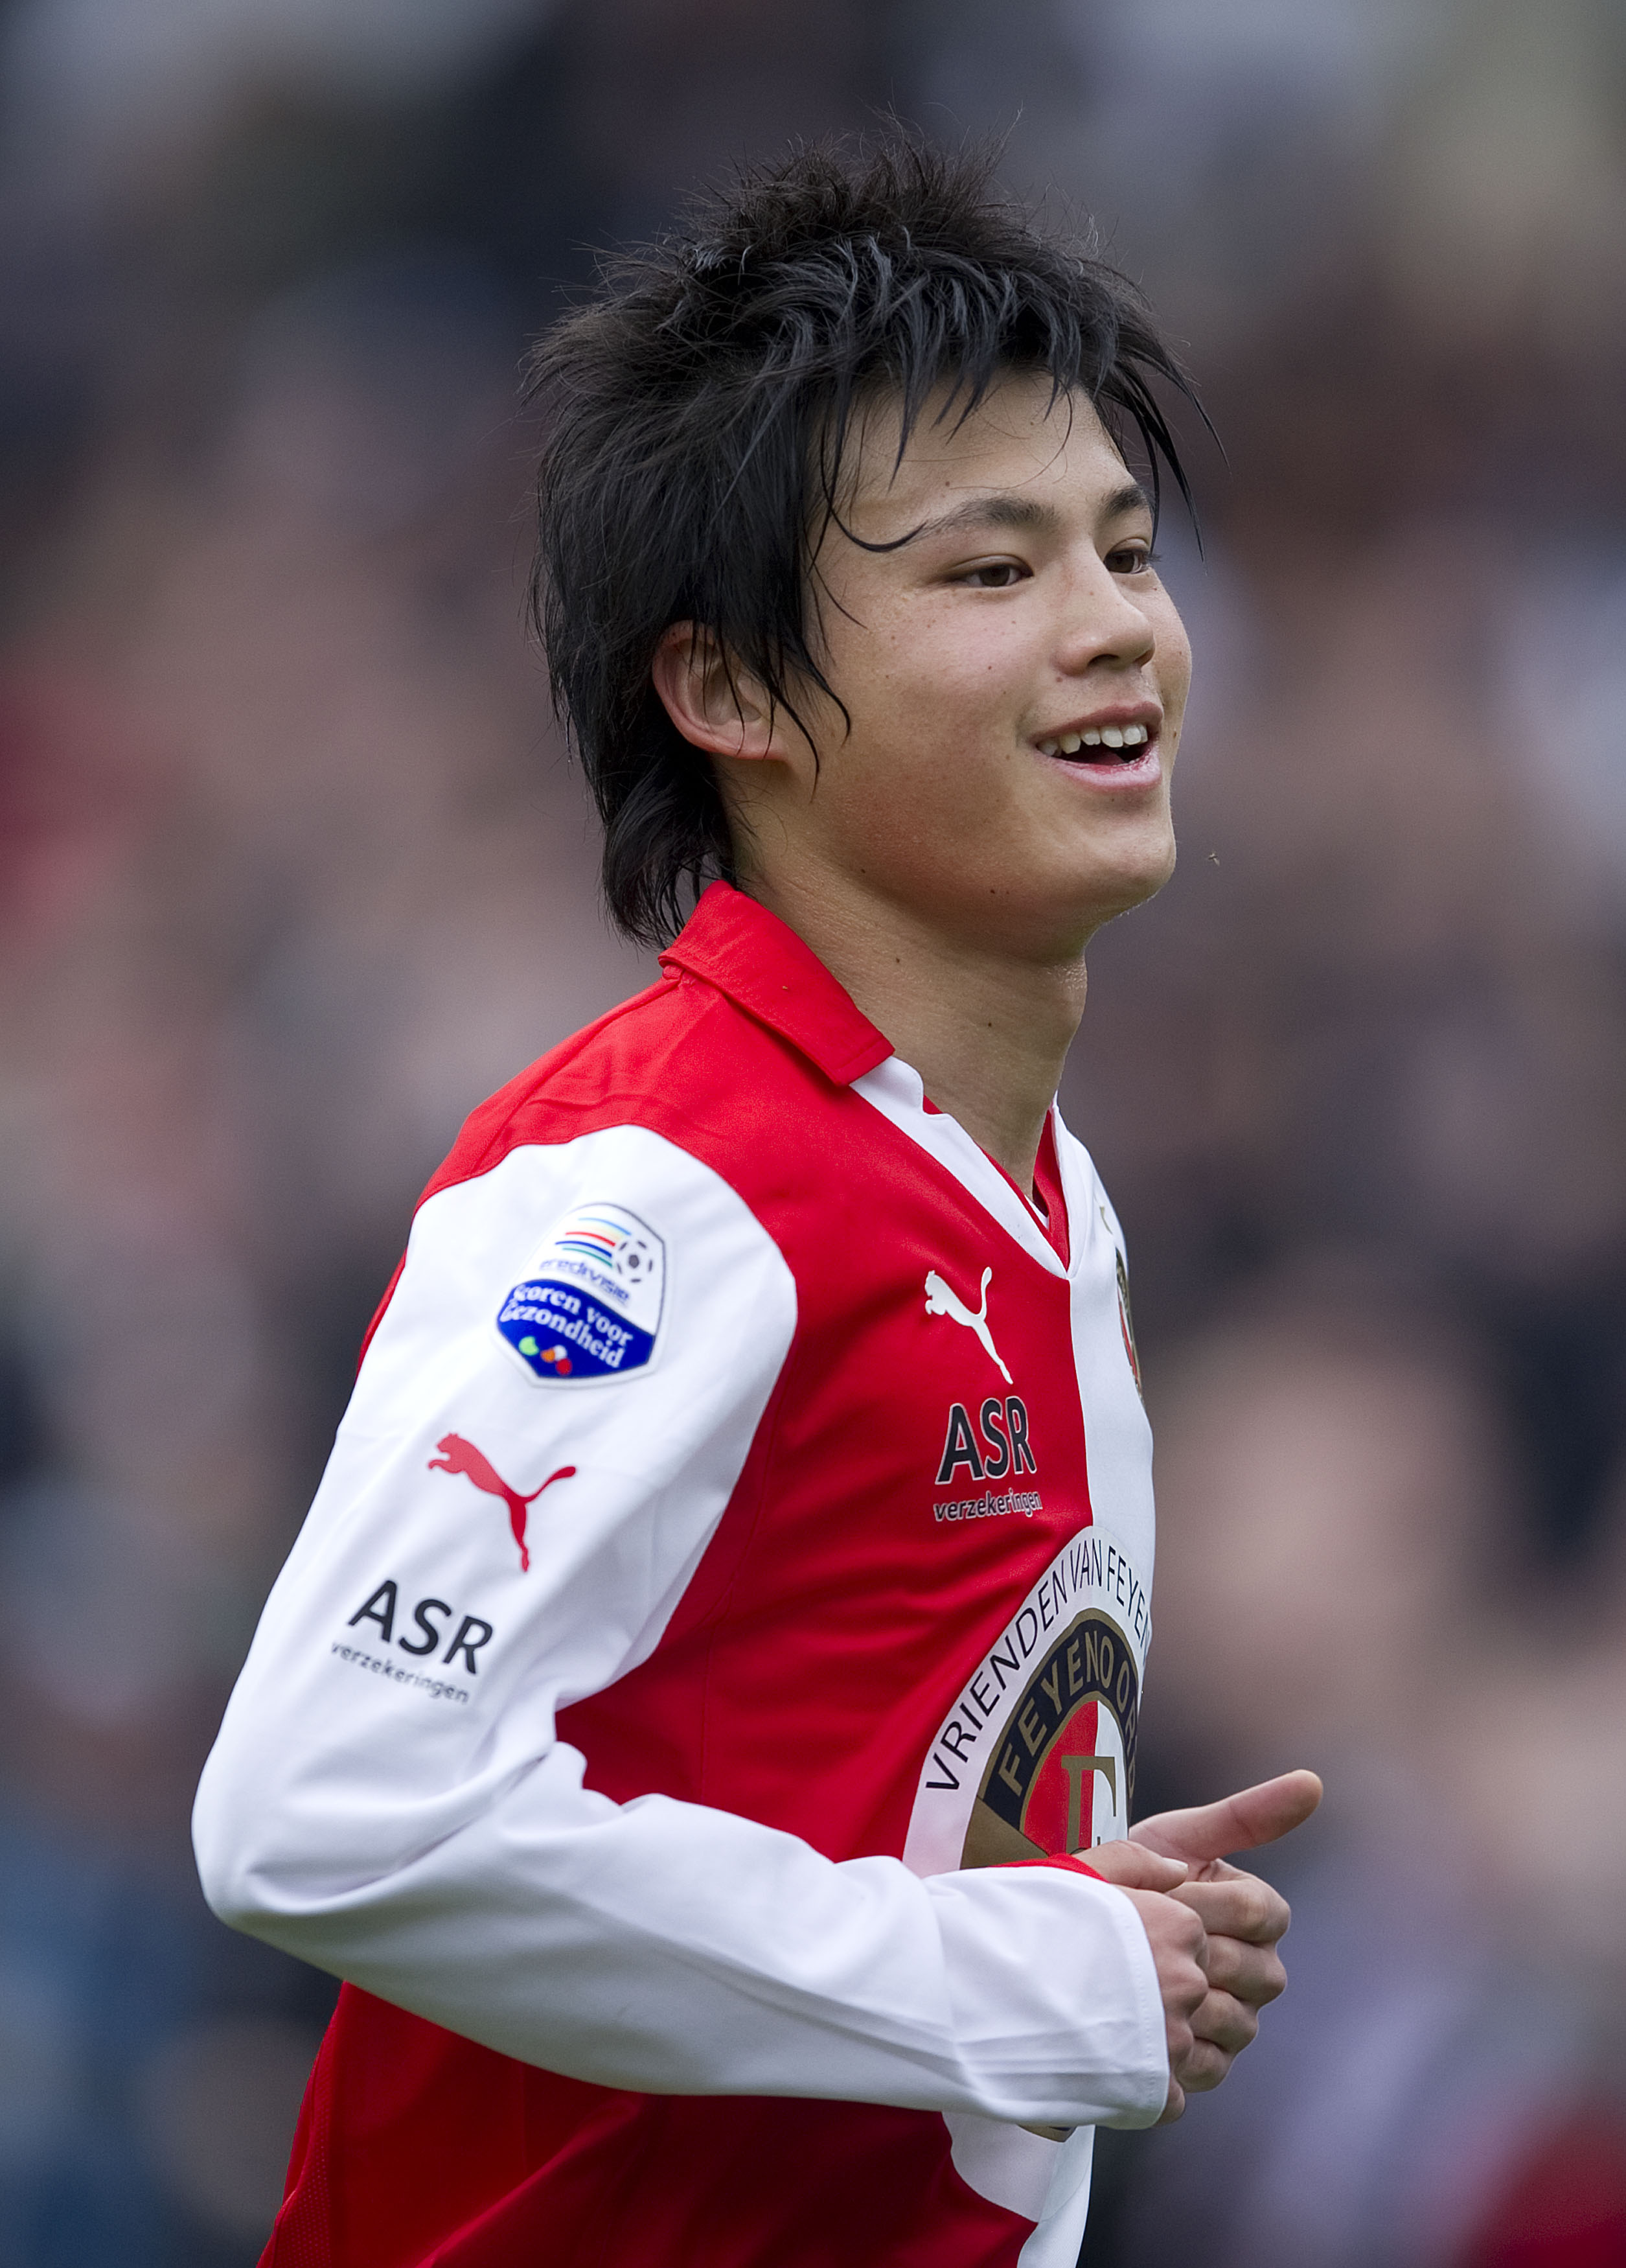 Best Footballer in Asia - Wikipedia